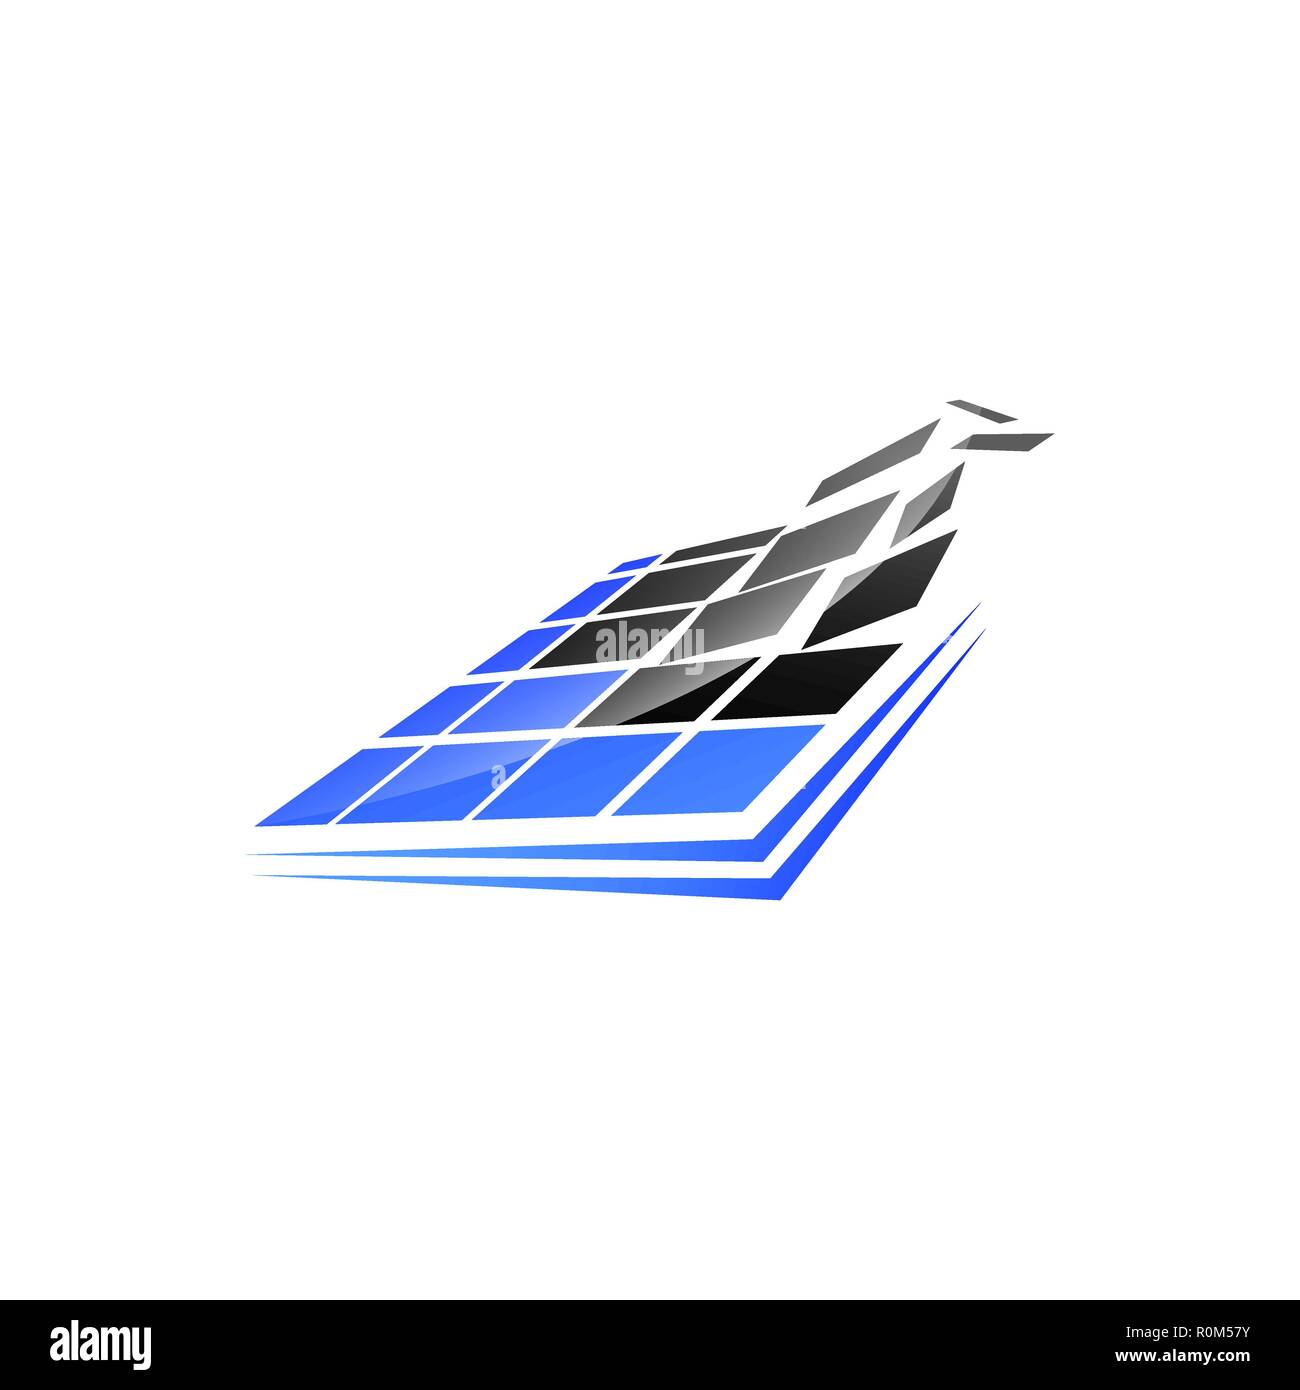 Pixel quadrati logo della tecnologia. Square pixel digitale logo design vector Illustrazione Vettoriale